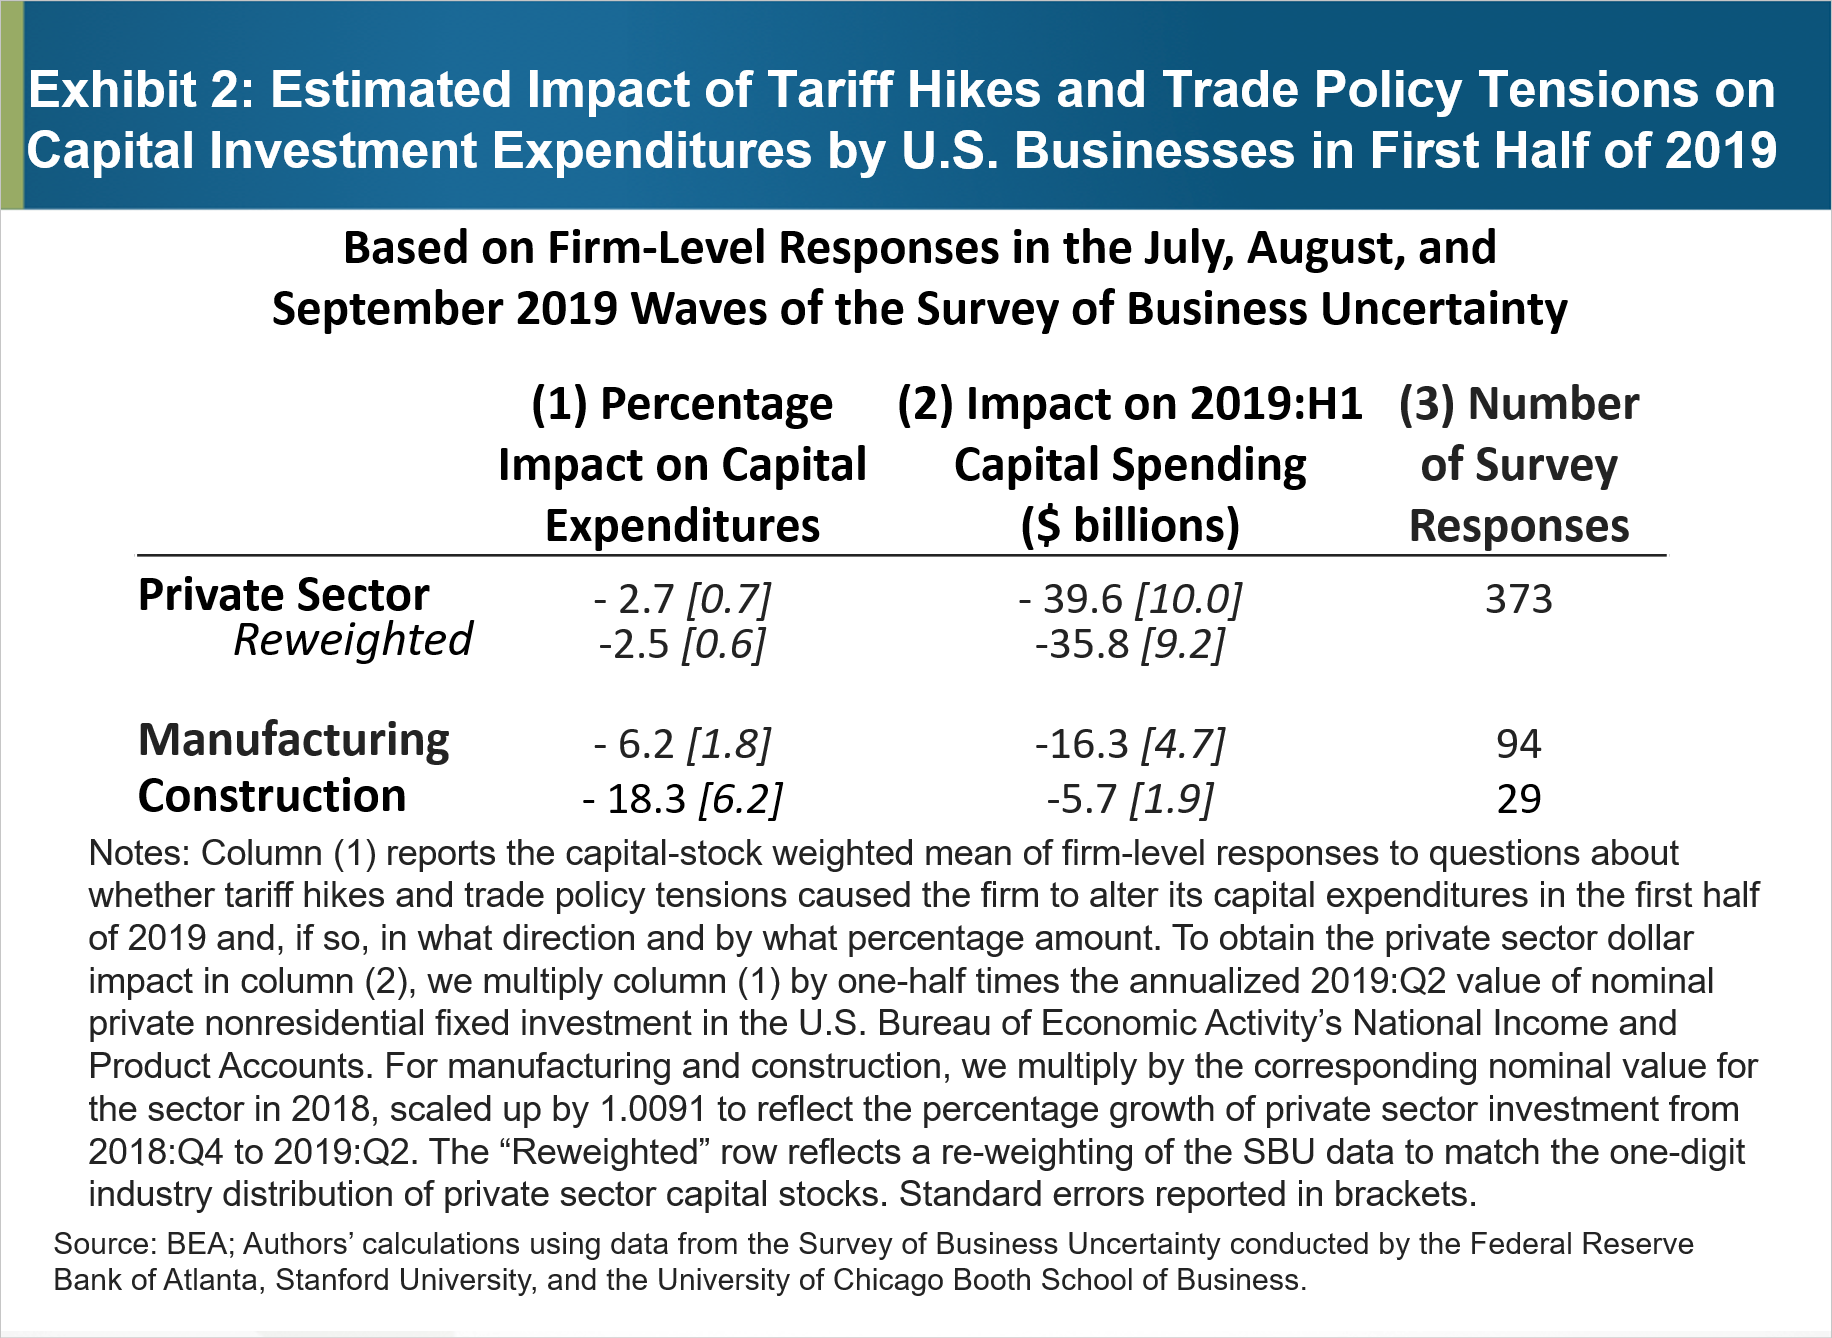 2. pielikums. Paredzamā tarifu paaugstināšanas un tirdzniecības politikas spriedzes ietekme uz ASV uzņēmumu kapitālieguldījumu izdevumiem 2019. gada pirmajā pusē